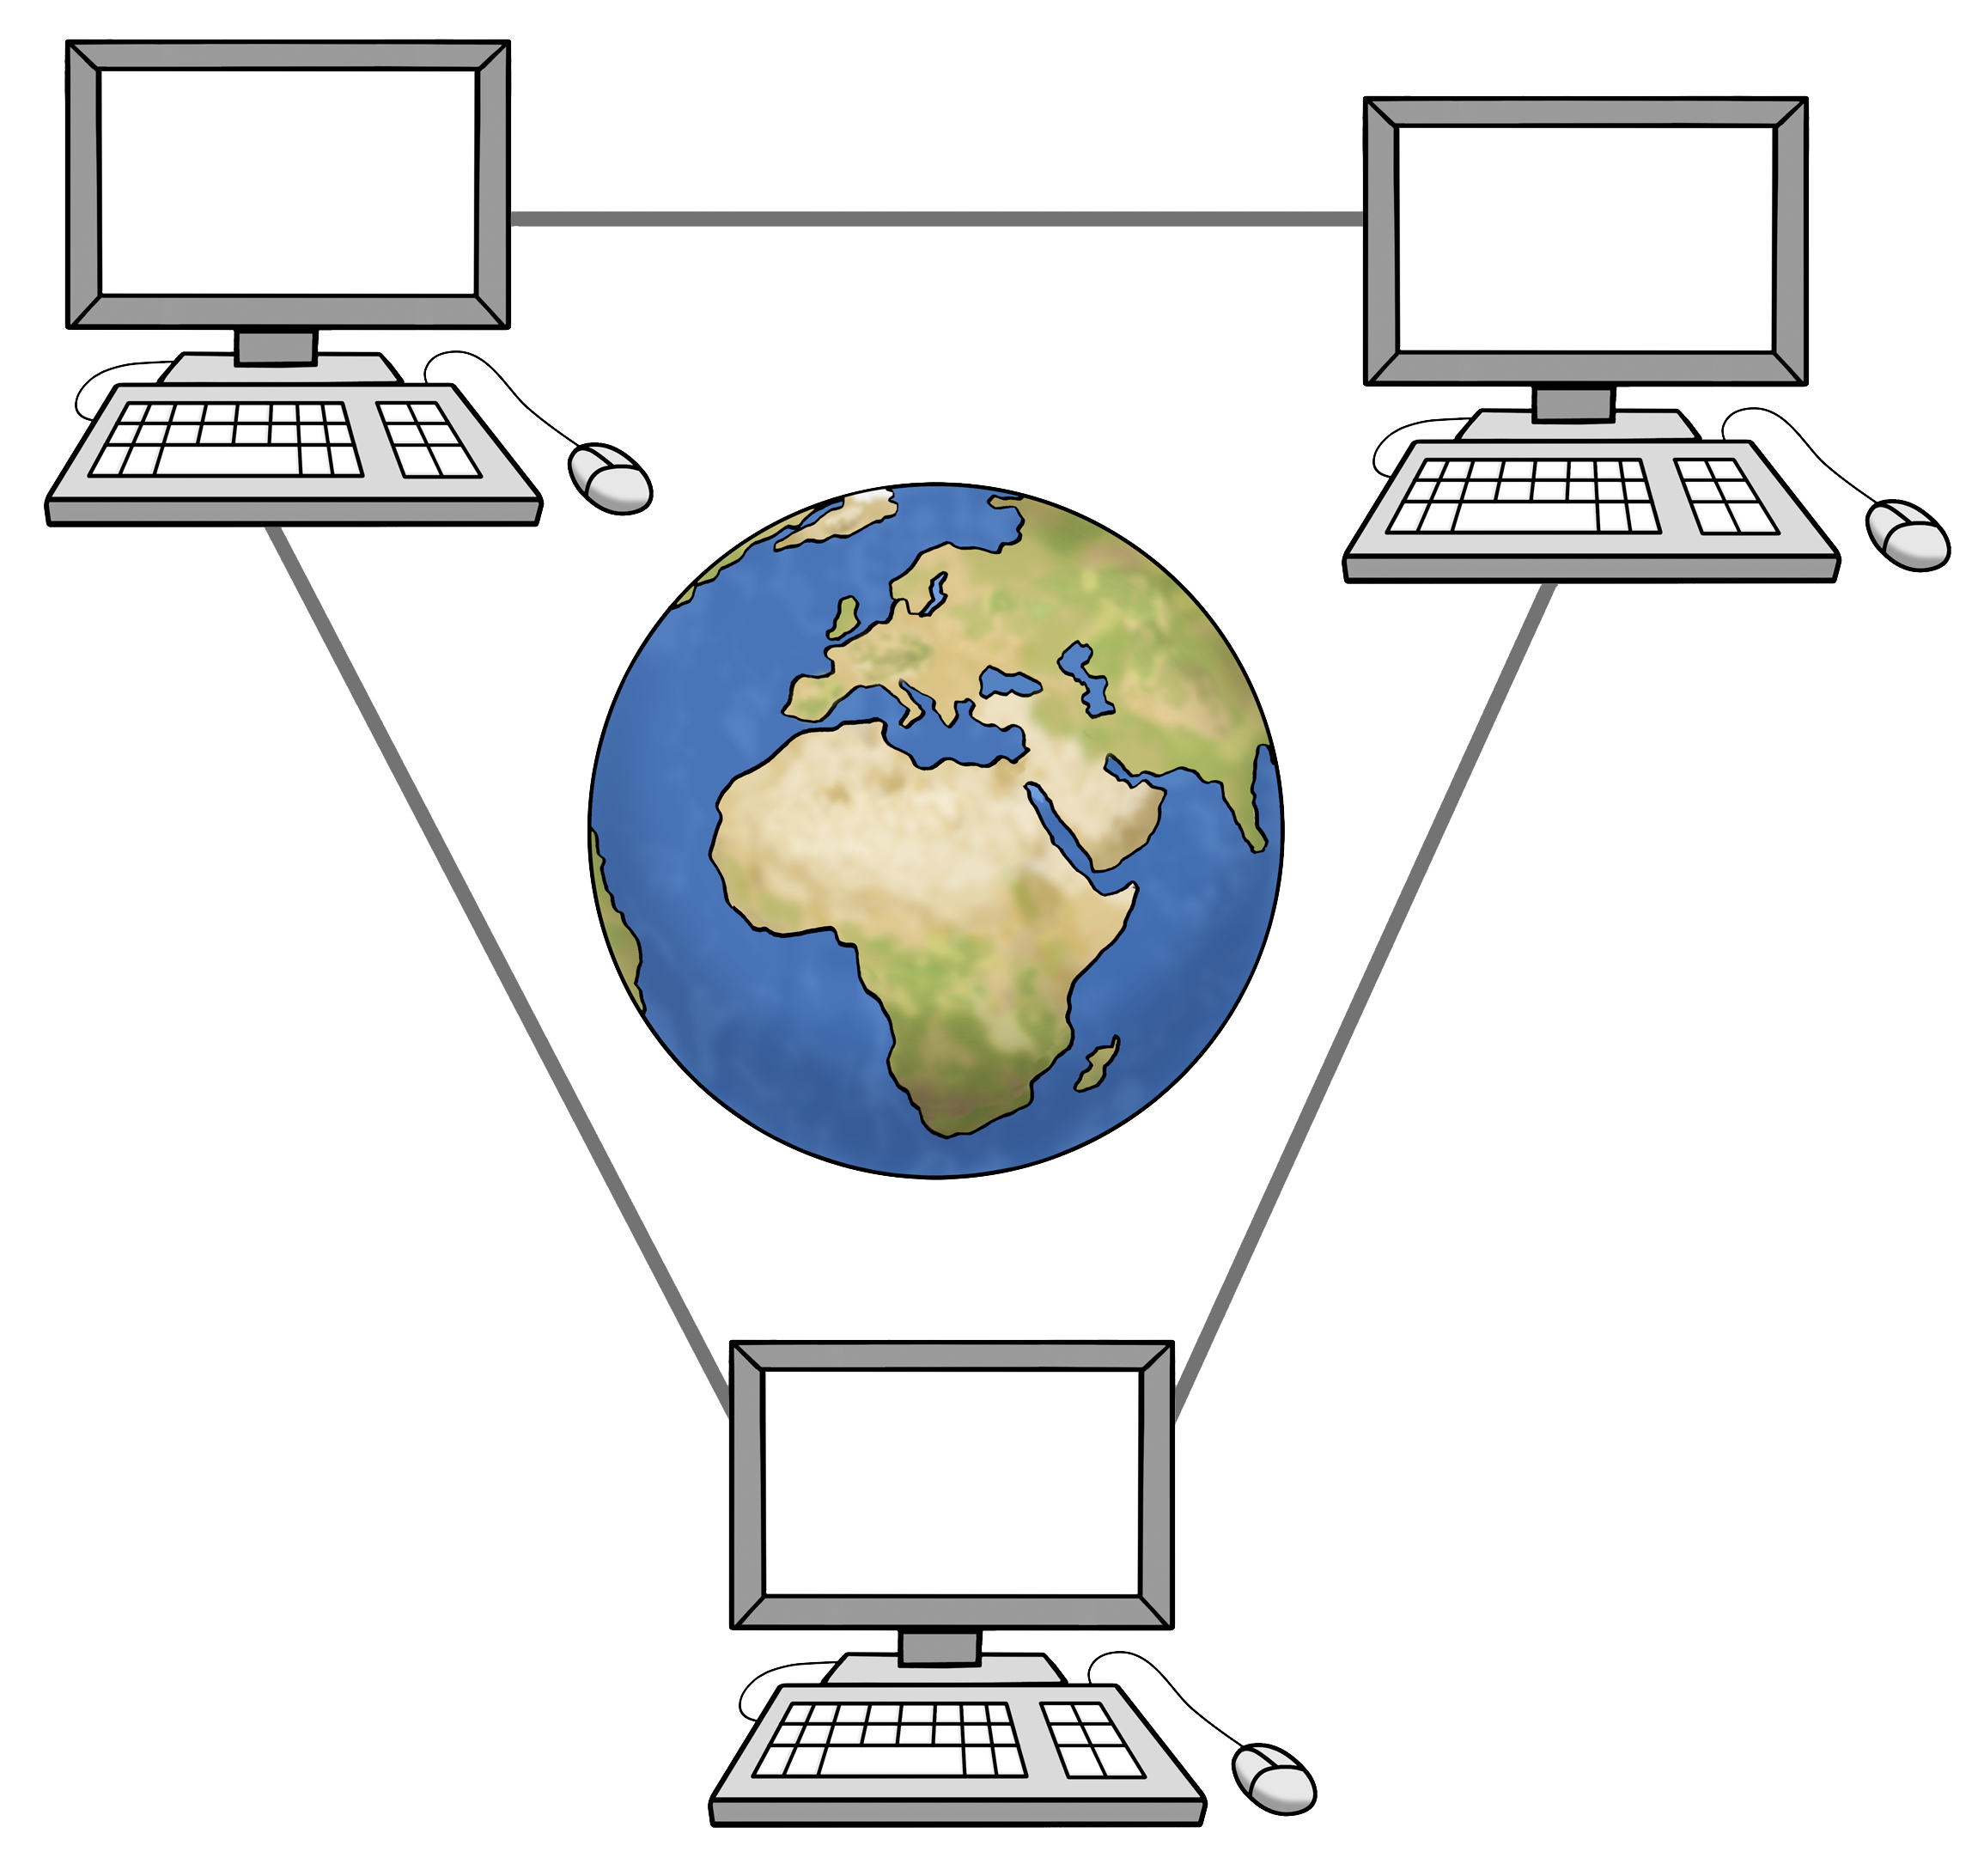 Leichte Sprache Bild: Drei Computer mit Linien miteinander verbunden, in der Mitte eine Weltkugel